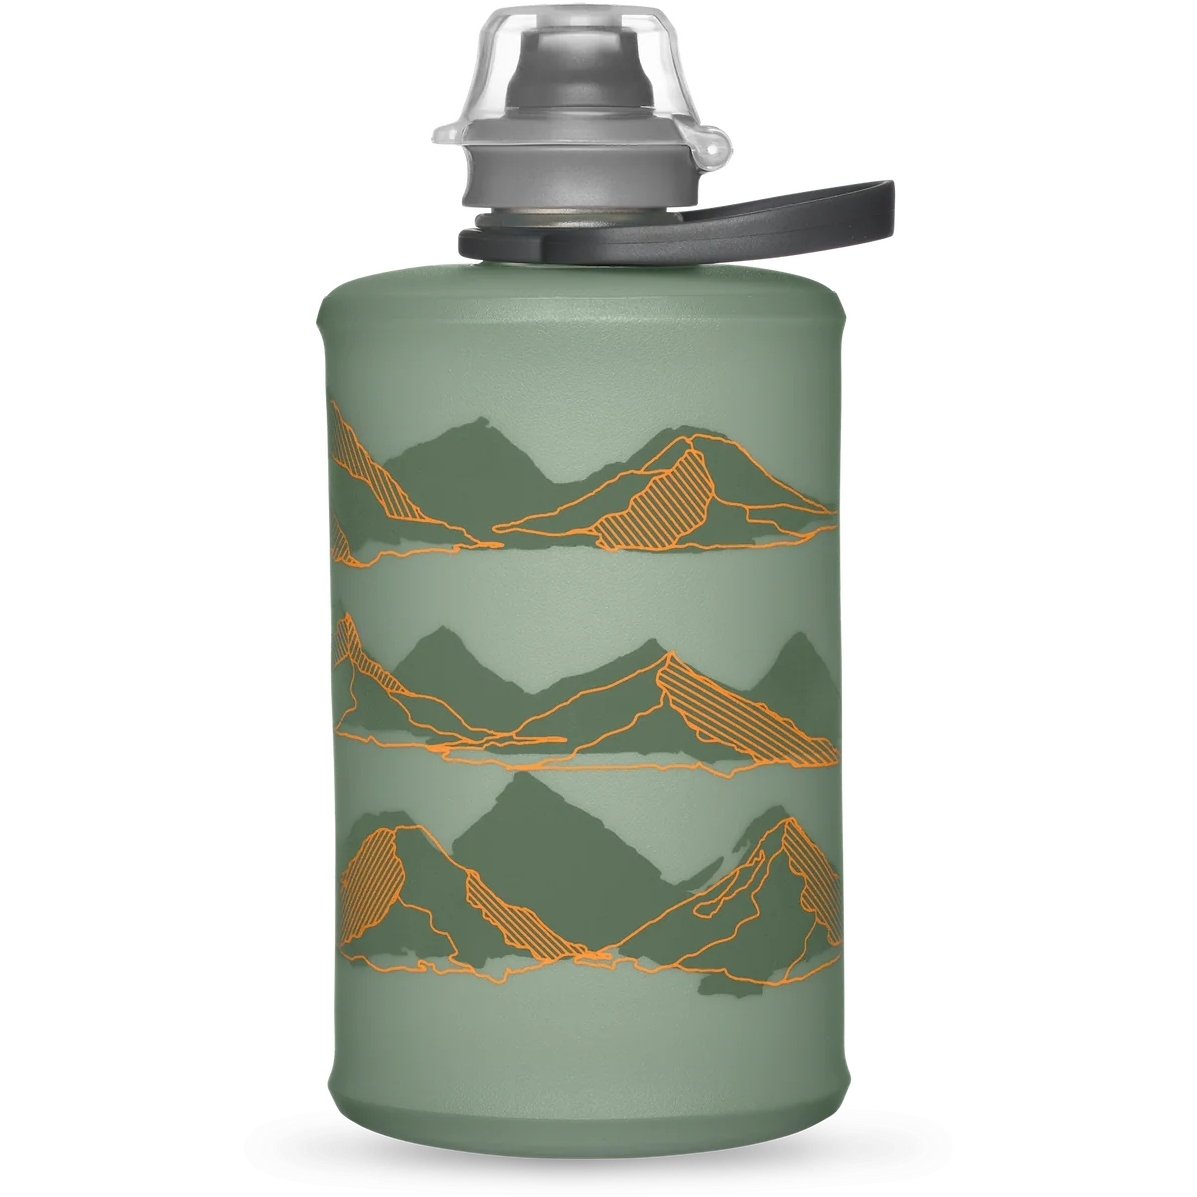 Produktbild von Hydrapak Mountain Stow™ Faltflasche - 350 ml - sutro green